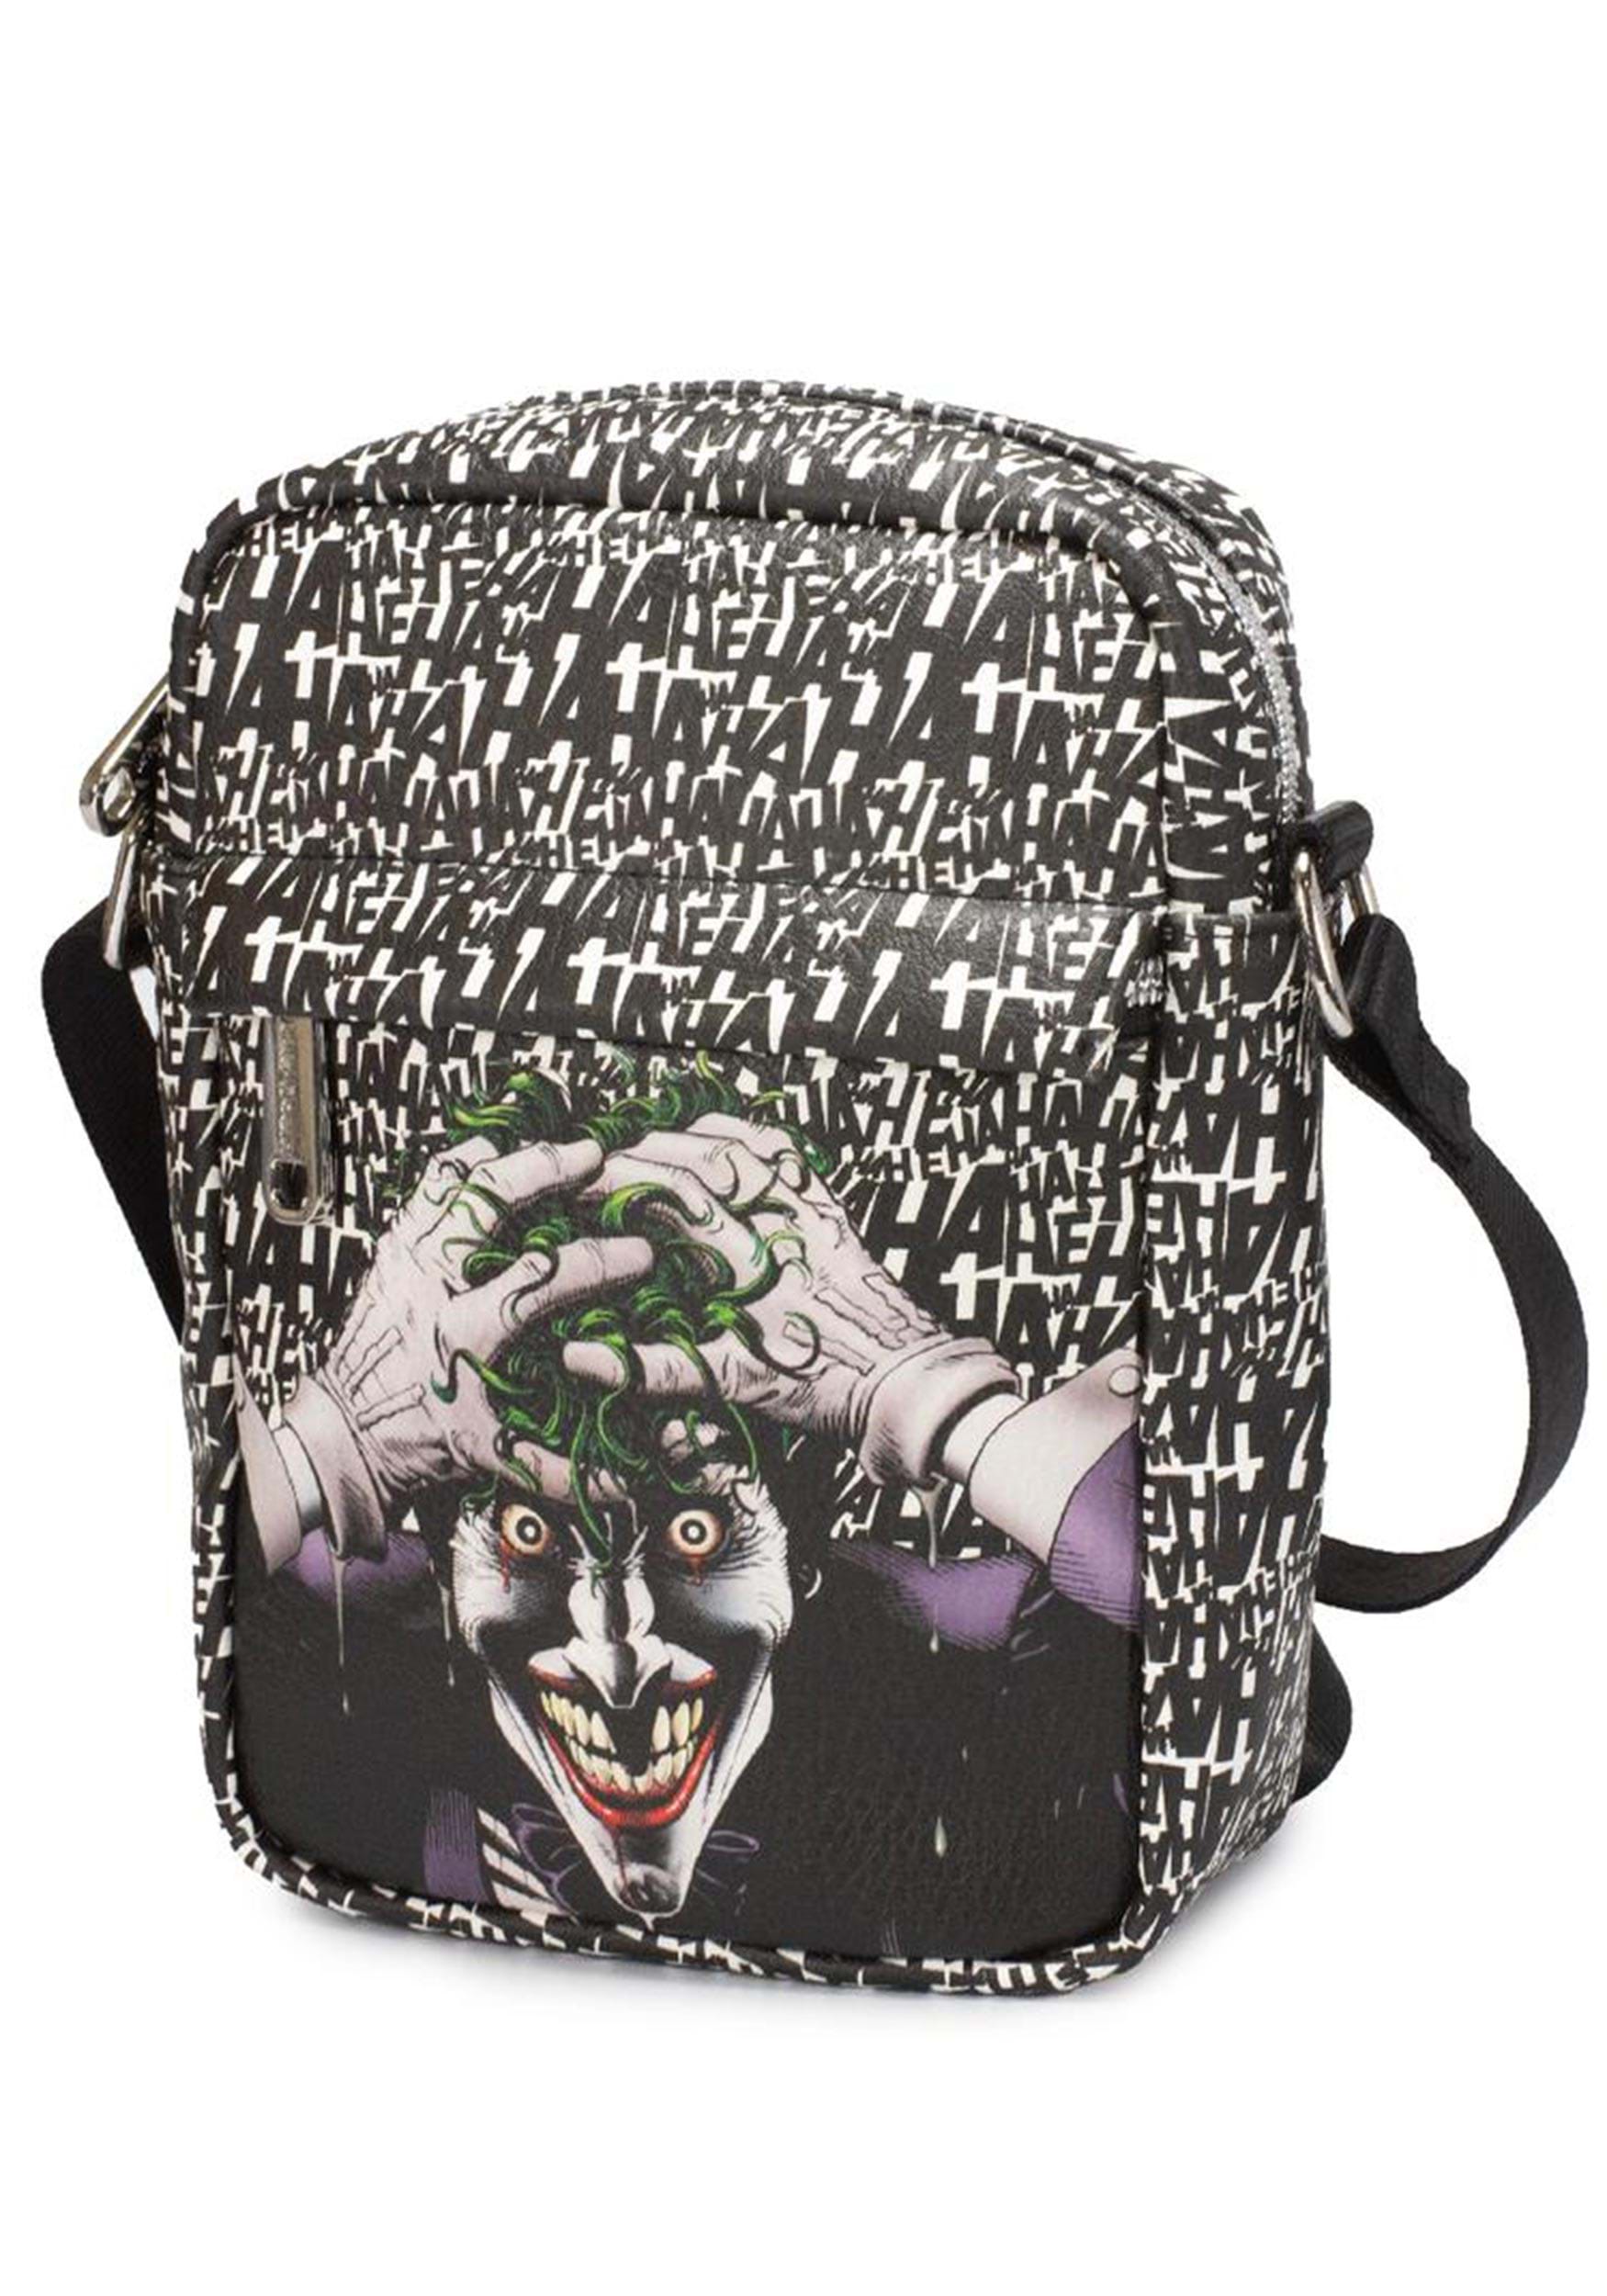 Batman The Joker Crossbody Bag